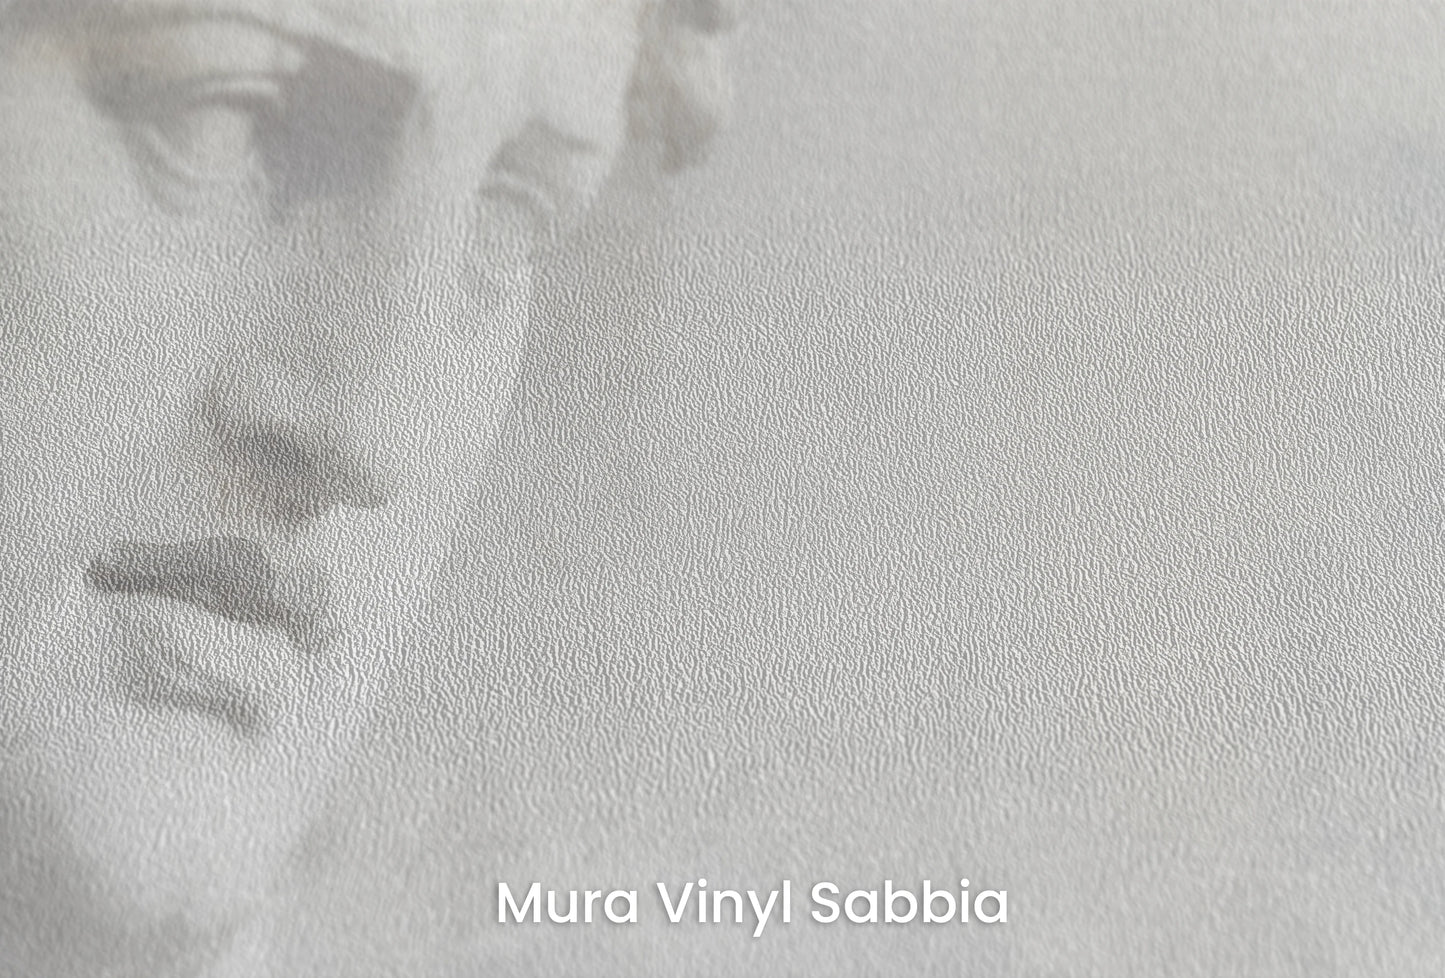 Zbliżenie na artystyczną fototapetę o nazwie Athena's Wisdom na podłożu Mura Vinyl Sabbia struktura grubego ziarna piasku.